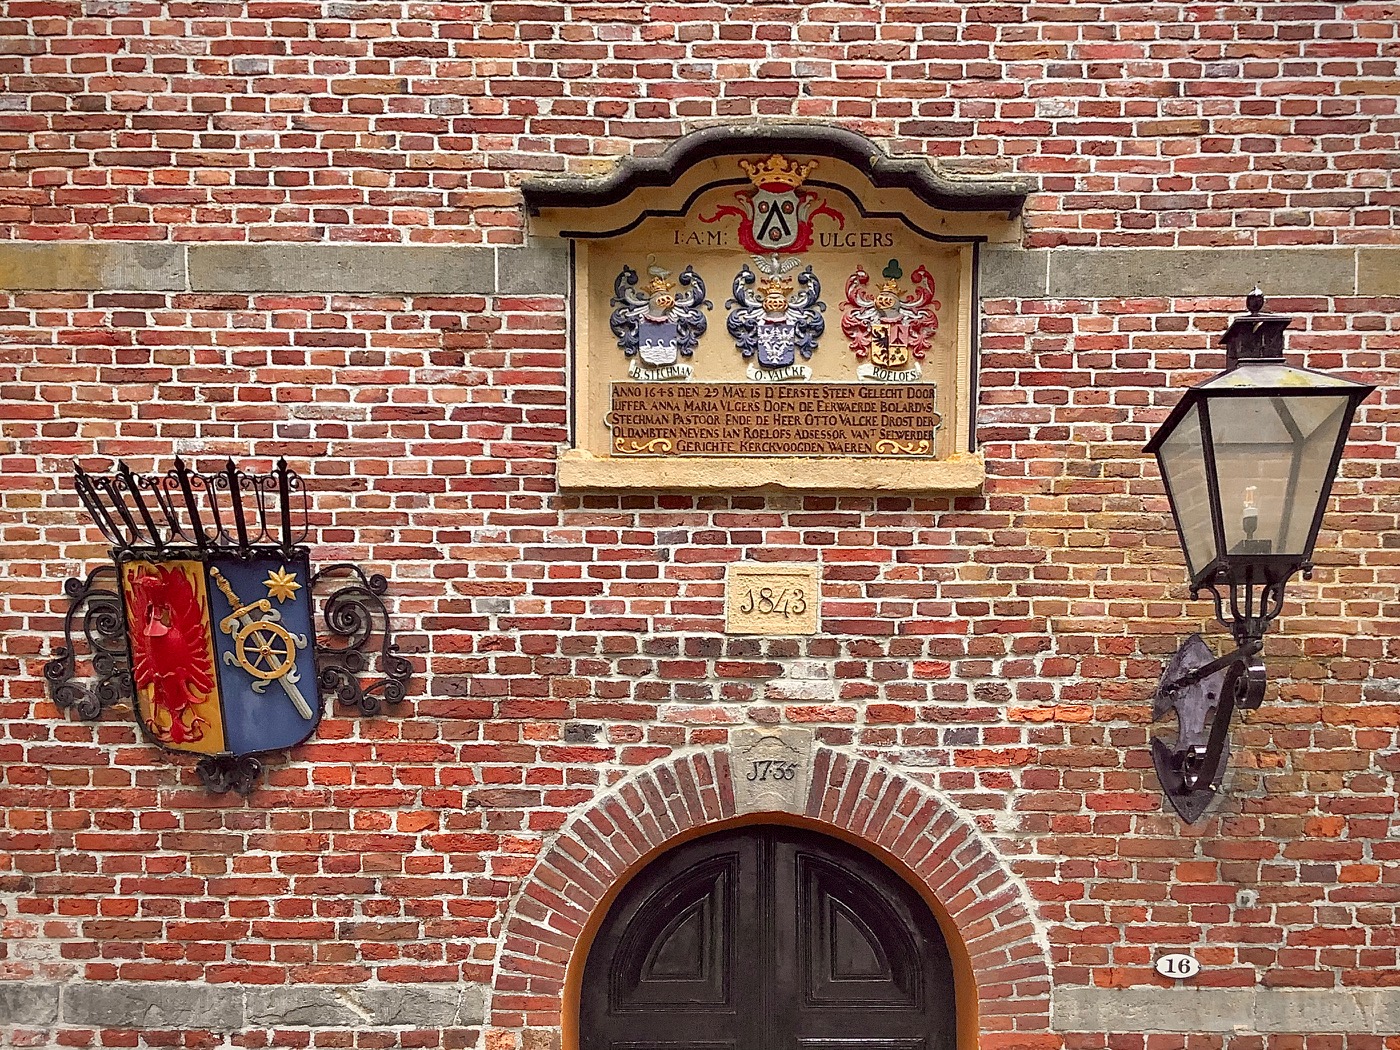 De toegang tot de kerk onder de toren met een gekleurde gedenksteen van de familie Ulgers boven de ingang met daaronder het jaartal 1843. Boven de ingang zien we het jaartal 1733. Foto: ©Jur Kuipers.